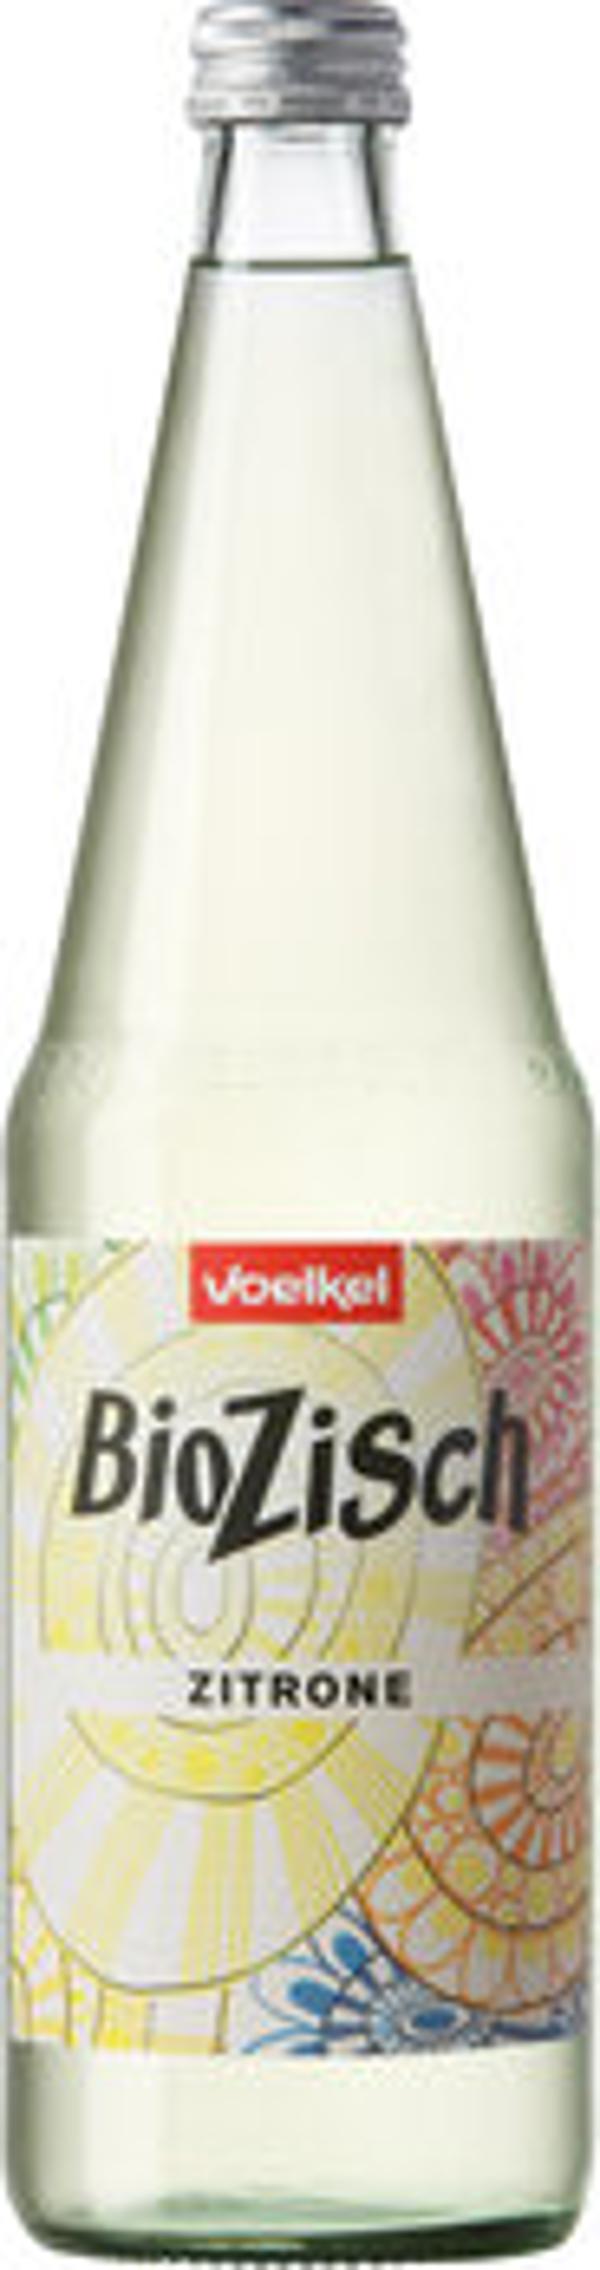 Produktfoto zu Voelkel Bio Zisch Zitrone 0,7l